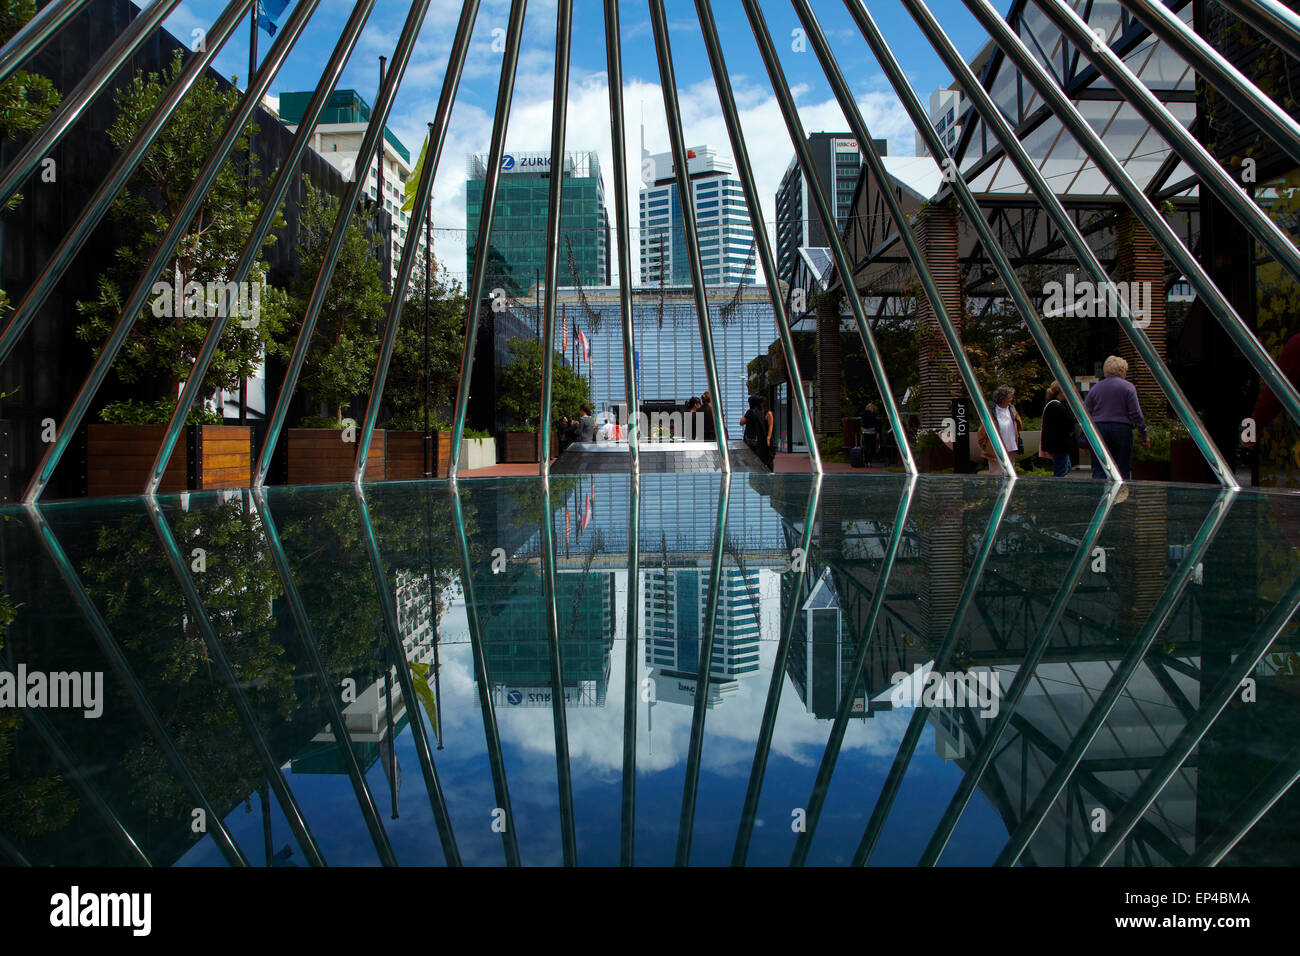 La riflessione di Britomart centro di trasporto, uffici e negozi, attraverso la griglia di acciaio, Auckland CBD, Isola del nord, Nuova Zelanda Foto Stock